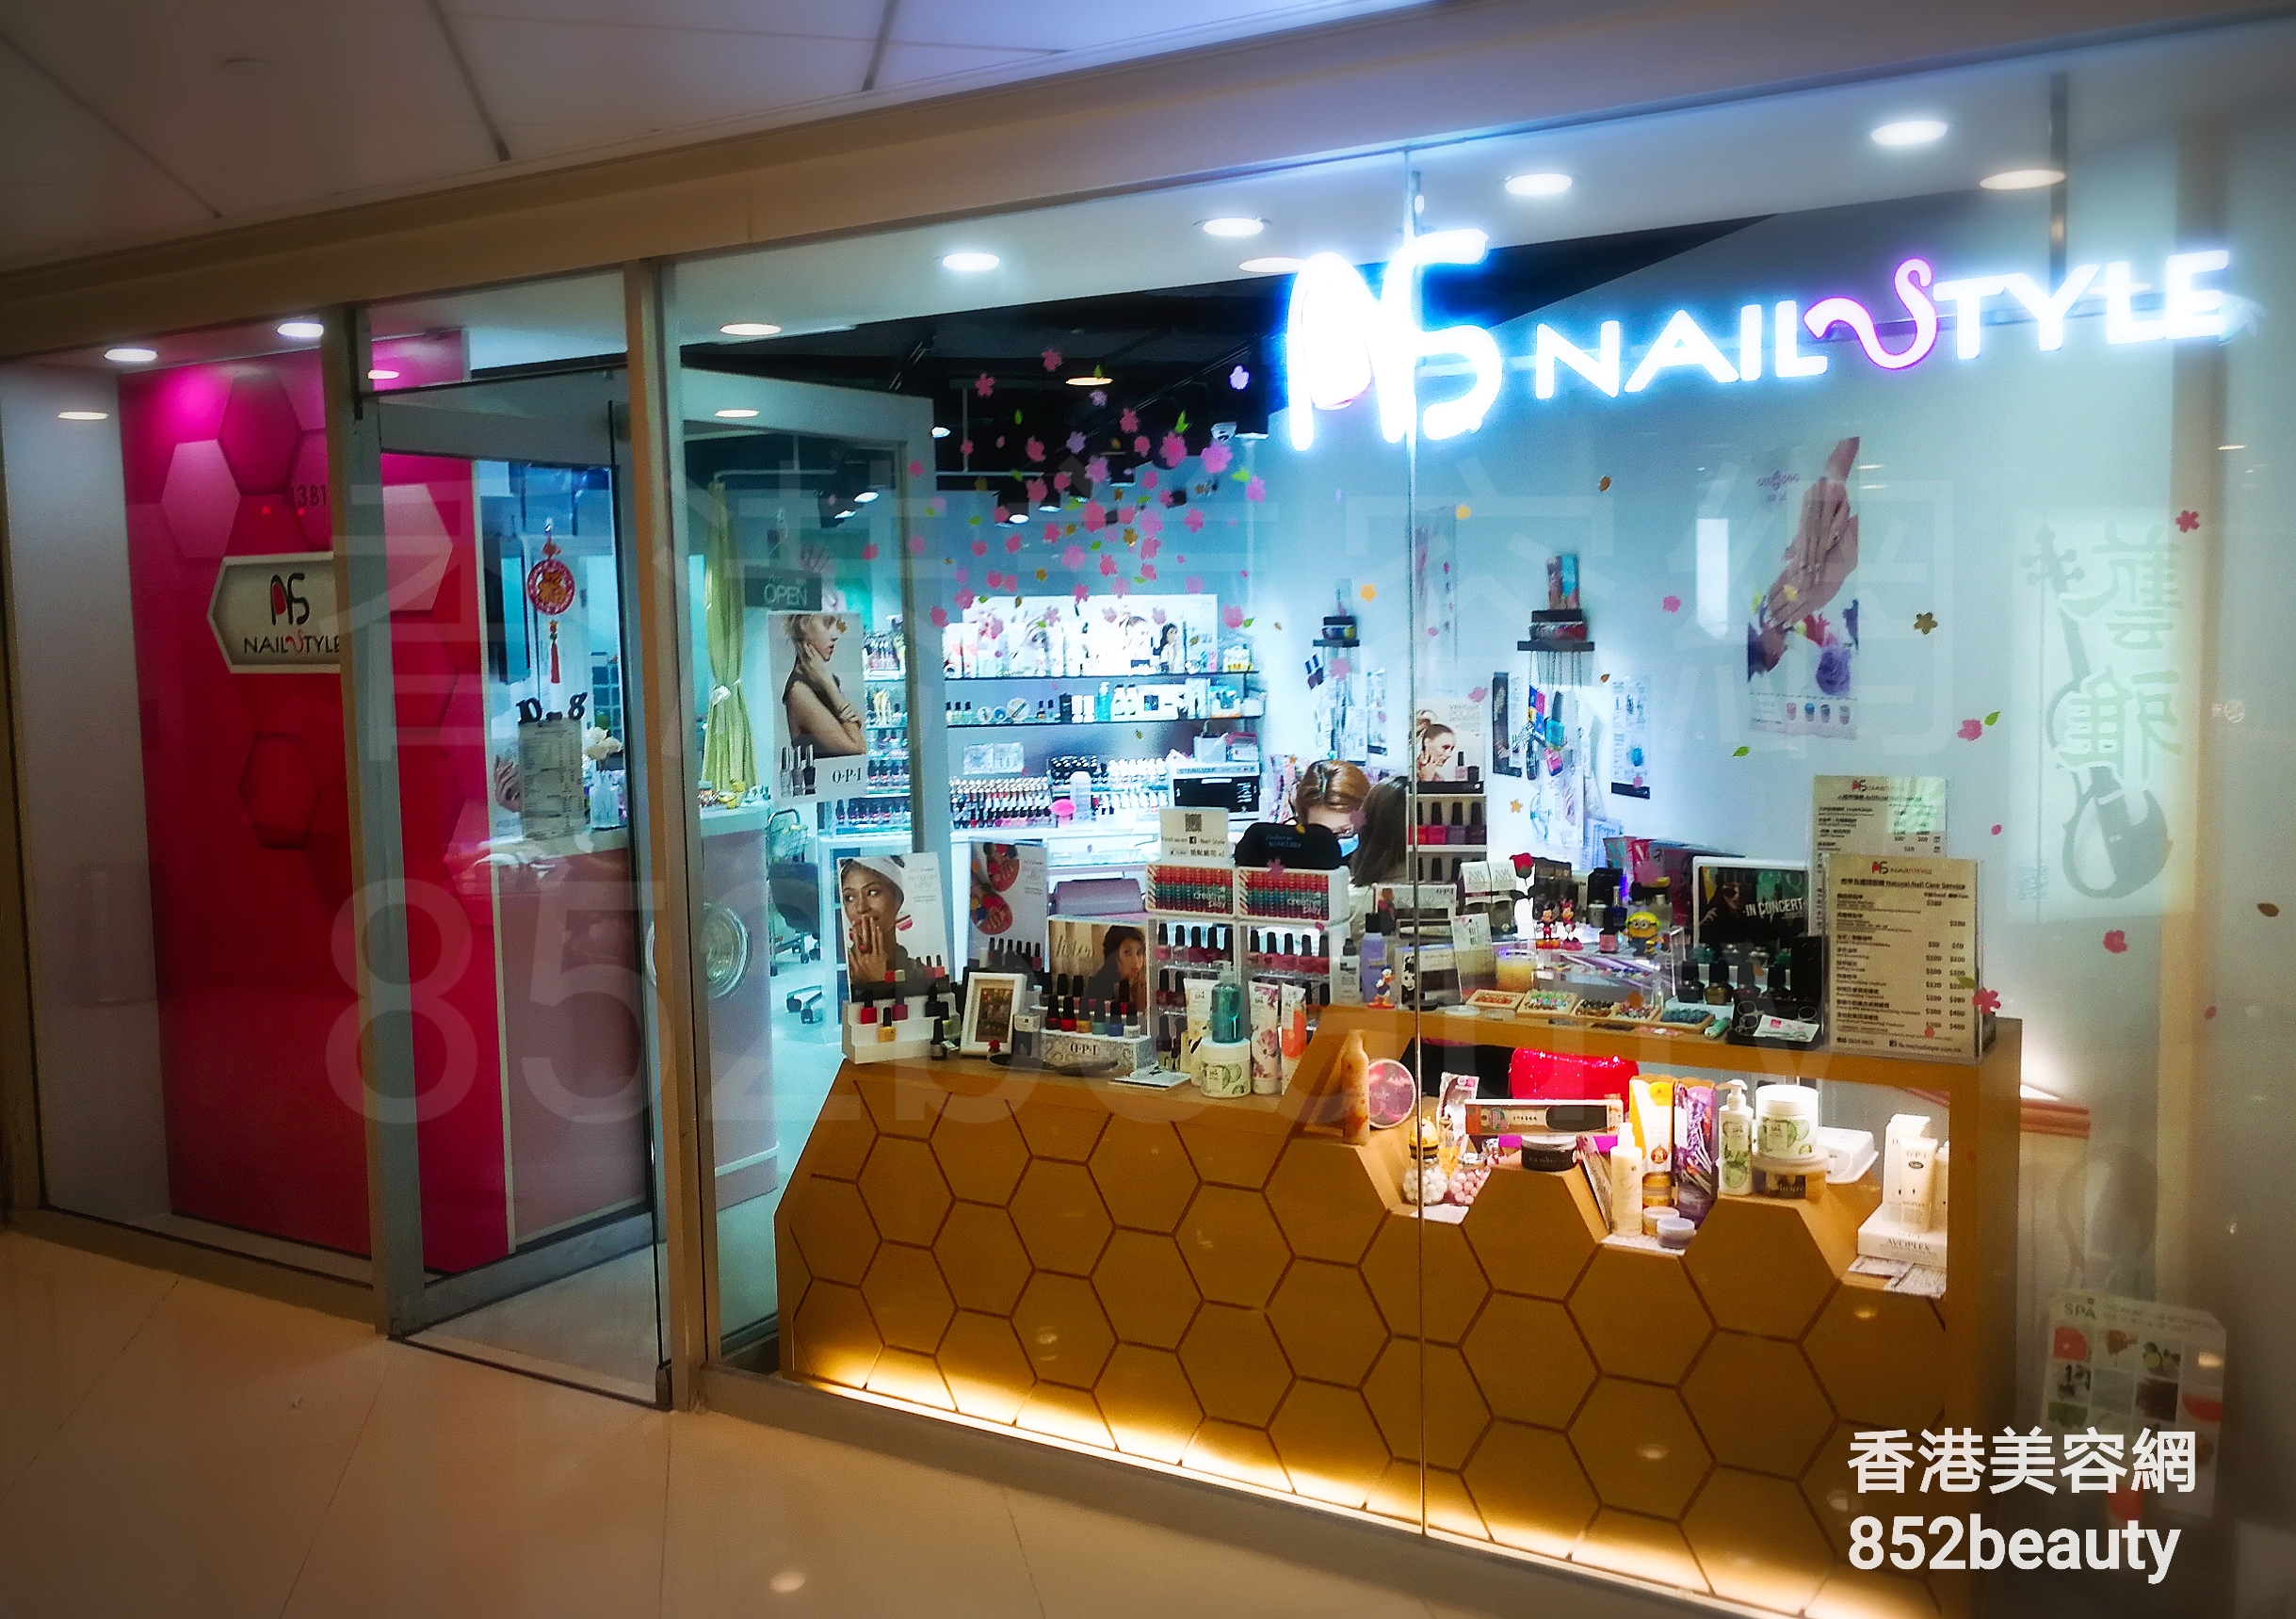 香港美容網 Hong Kong Beauty Salon 美容院 / 美容師: NAIL STYLE (置富第一城分店)